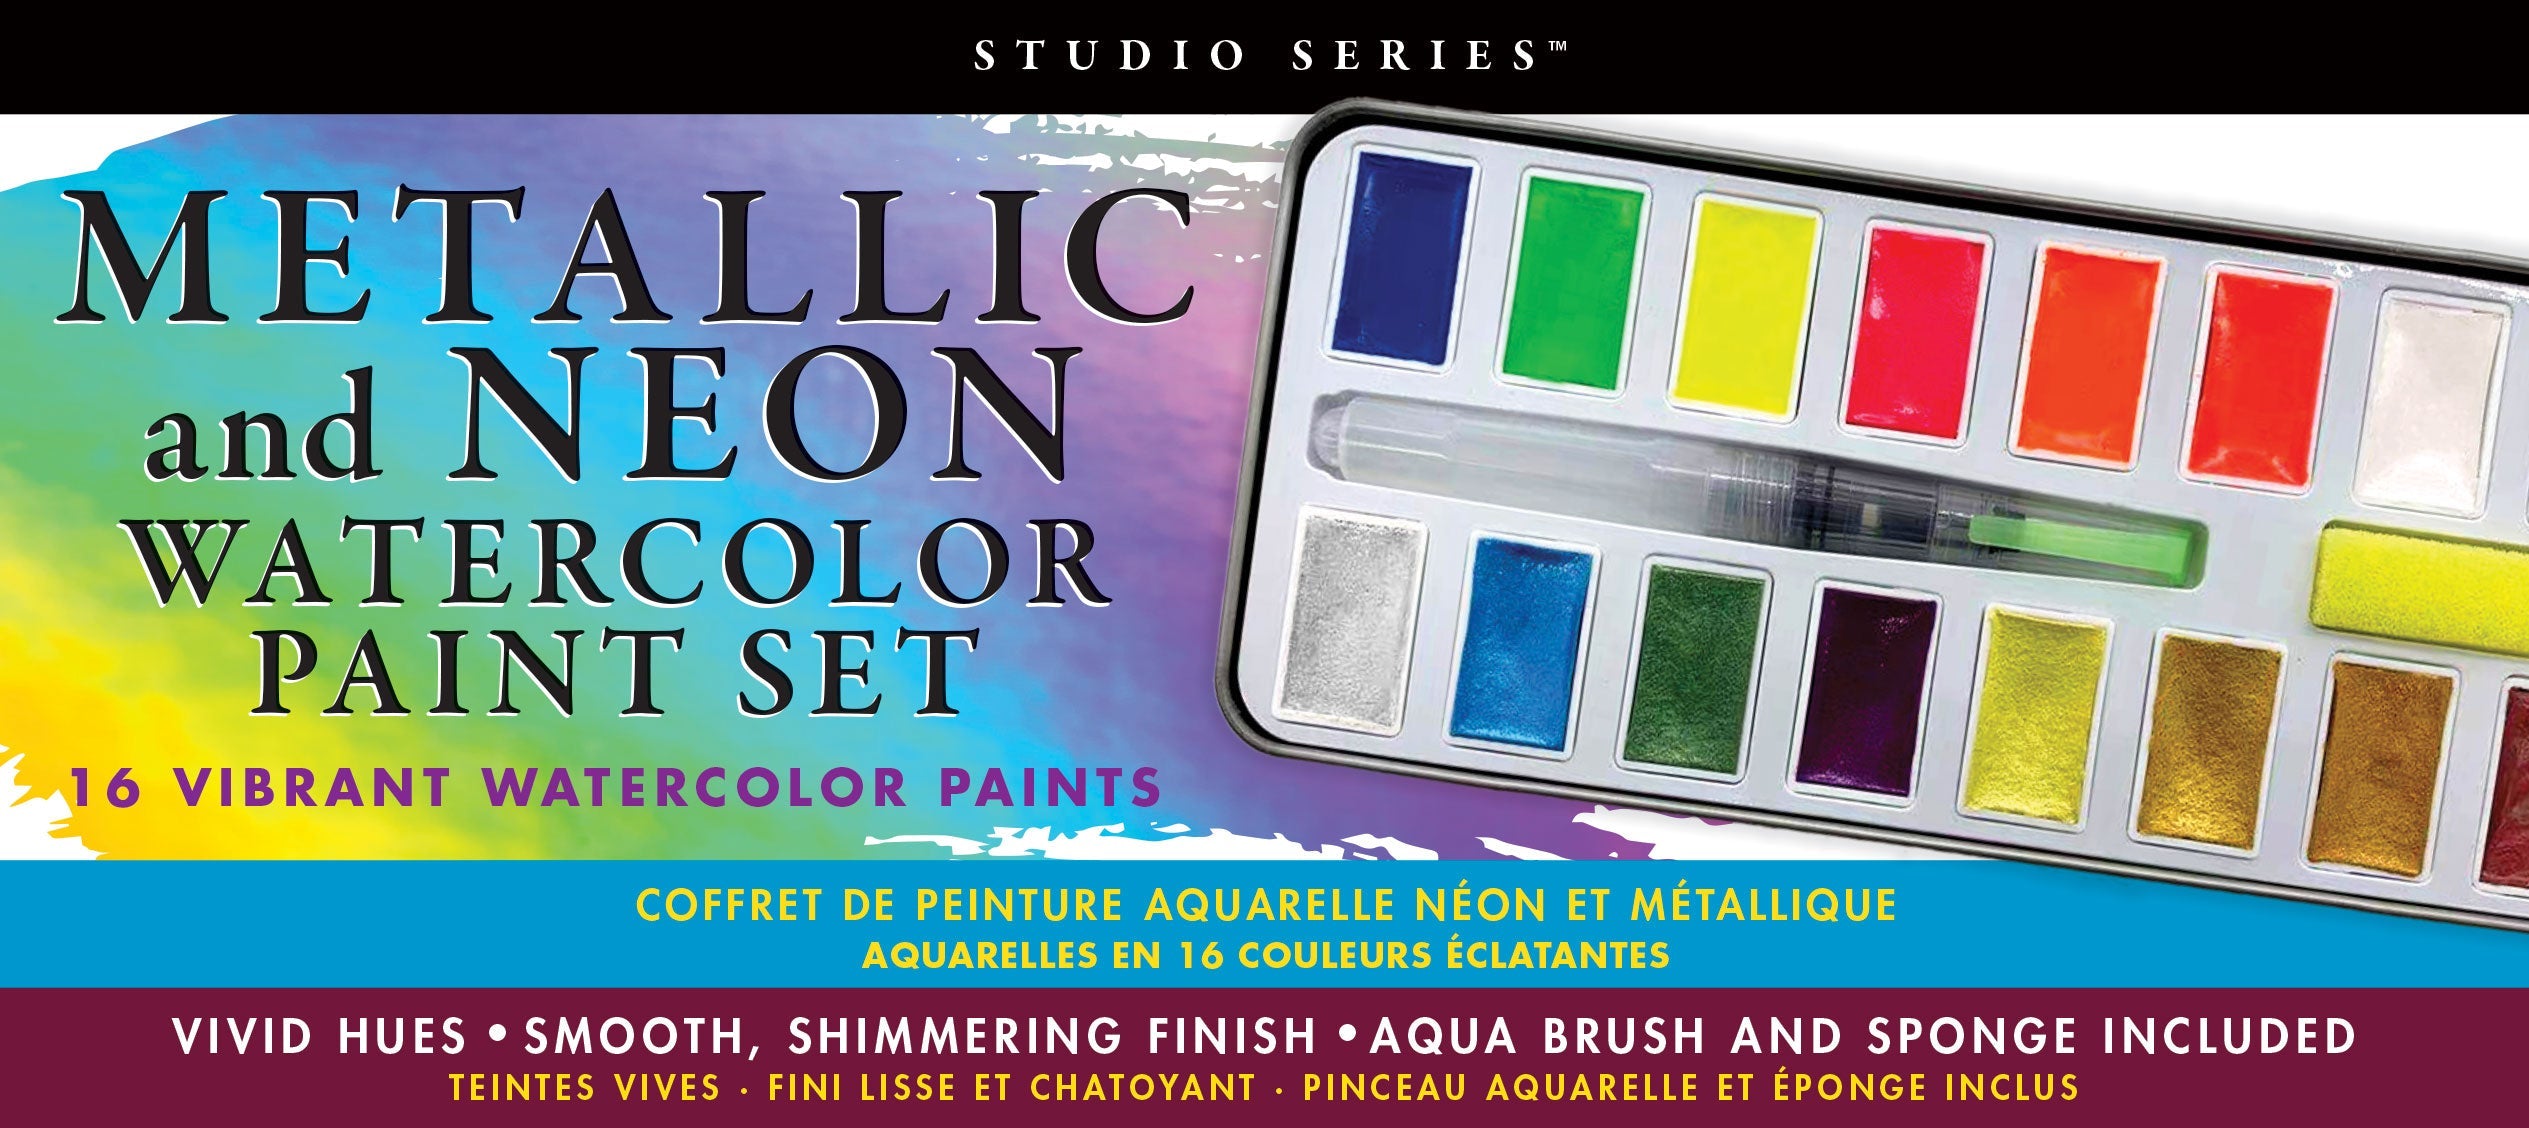 watercolor paint set